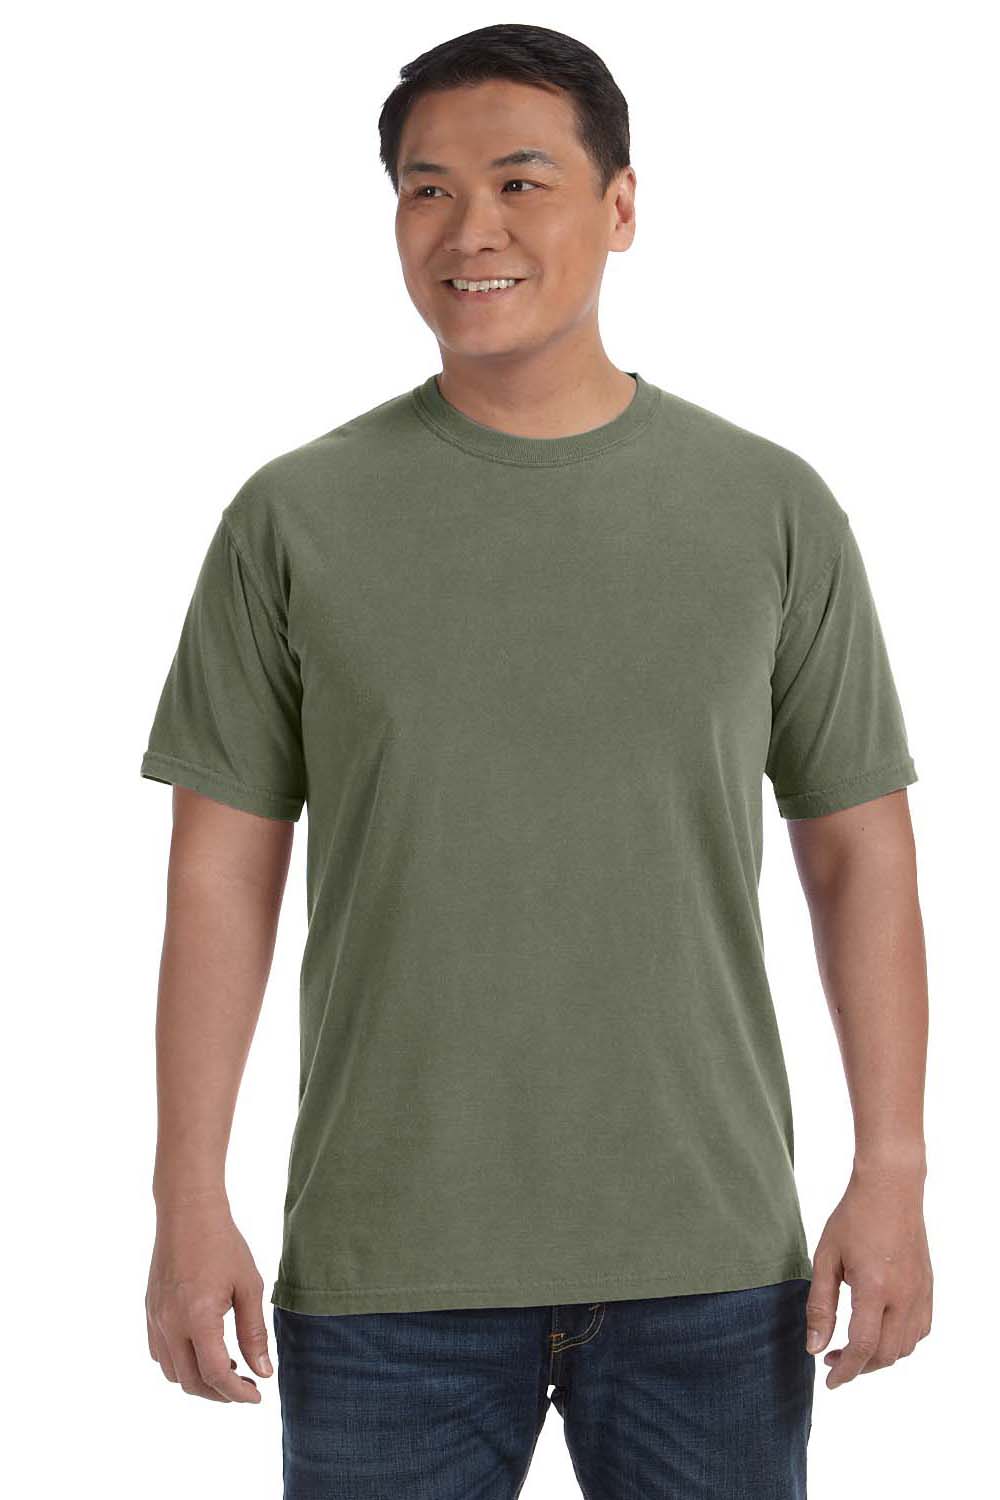 Comfort Colors 1717/C1717 Mens Sage Green Short Sleeve Crewneck T-Shirt —